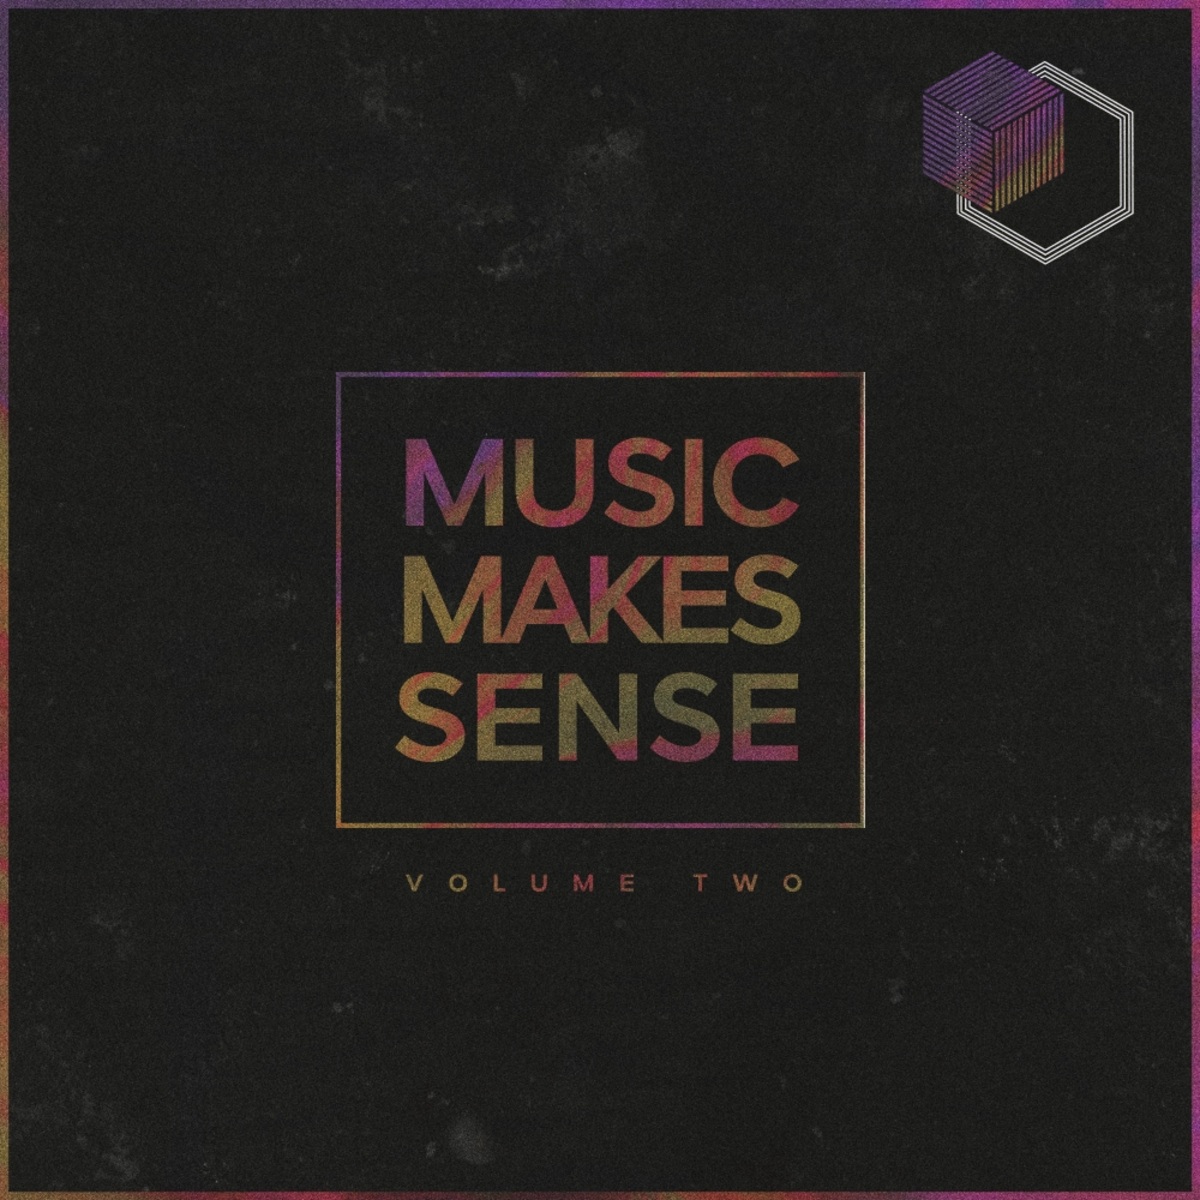 VA - Music Makes Sense, Vol. 2 / Sense Traxx